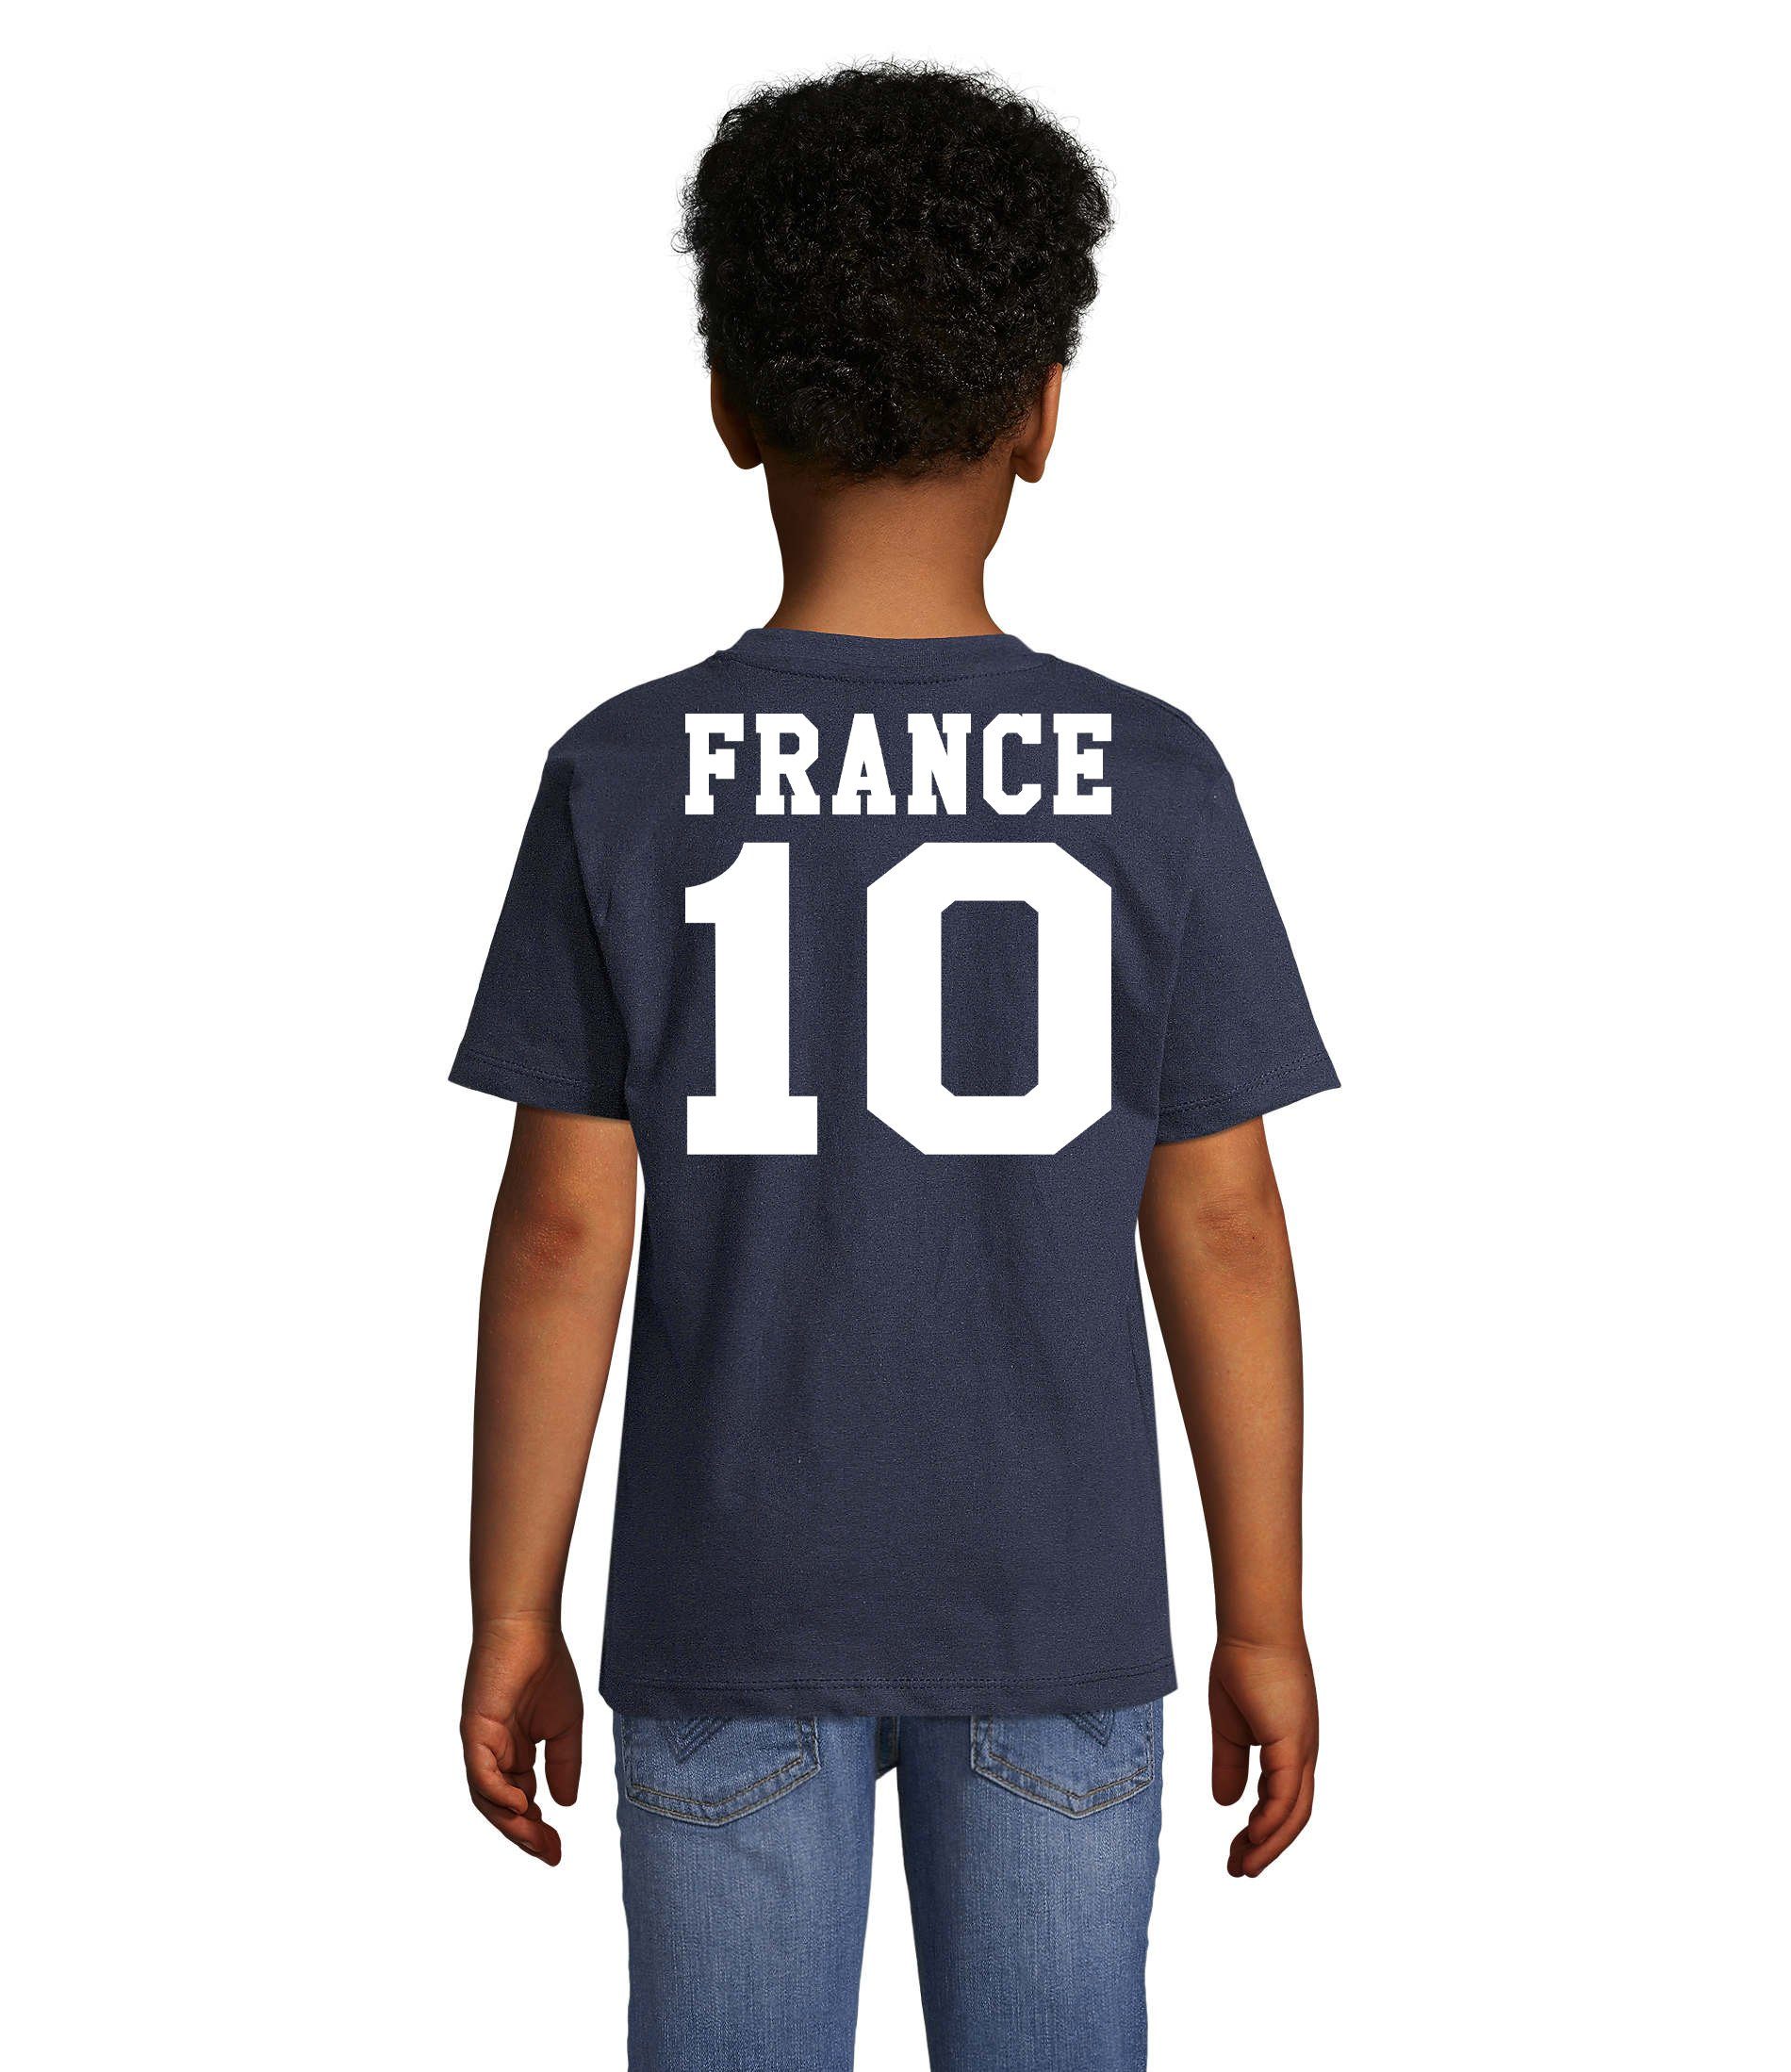 Blondie & Sport Fußball Brownie Frankreich Kinder Weltmeister T-Shirt France Trikot EM